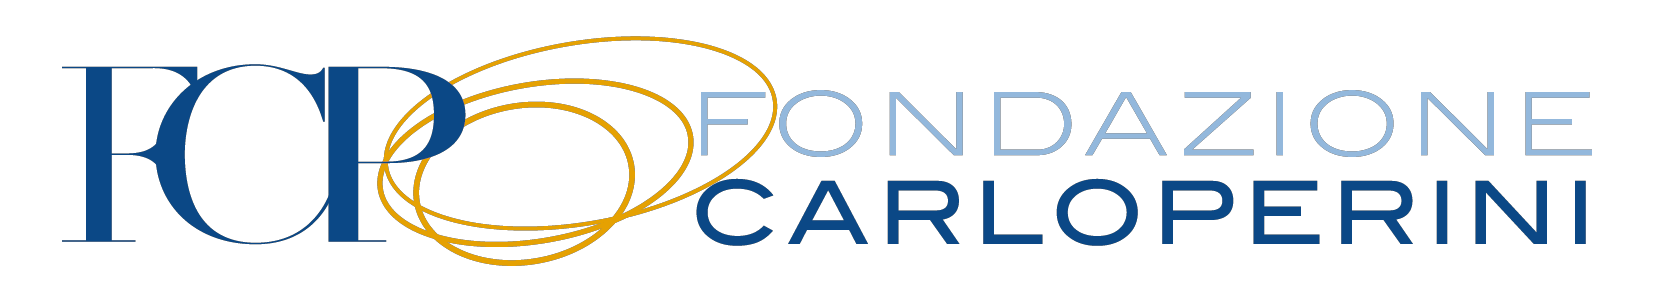 Logo Fondazione Carlo Perini